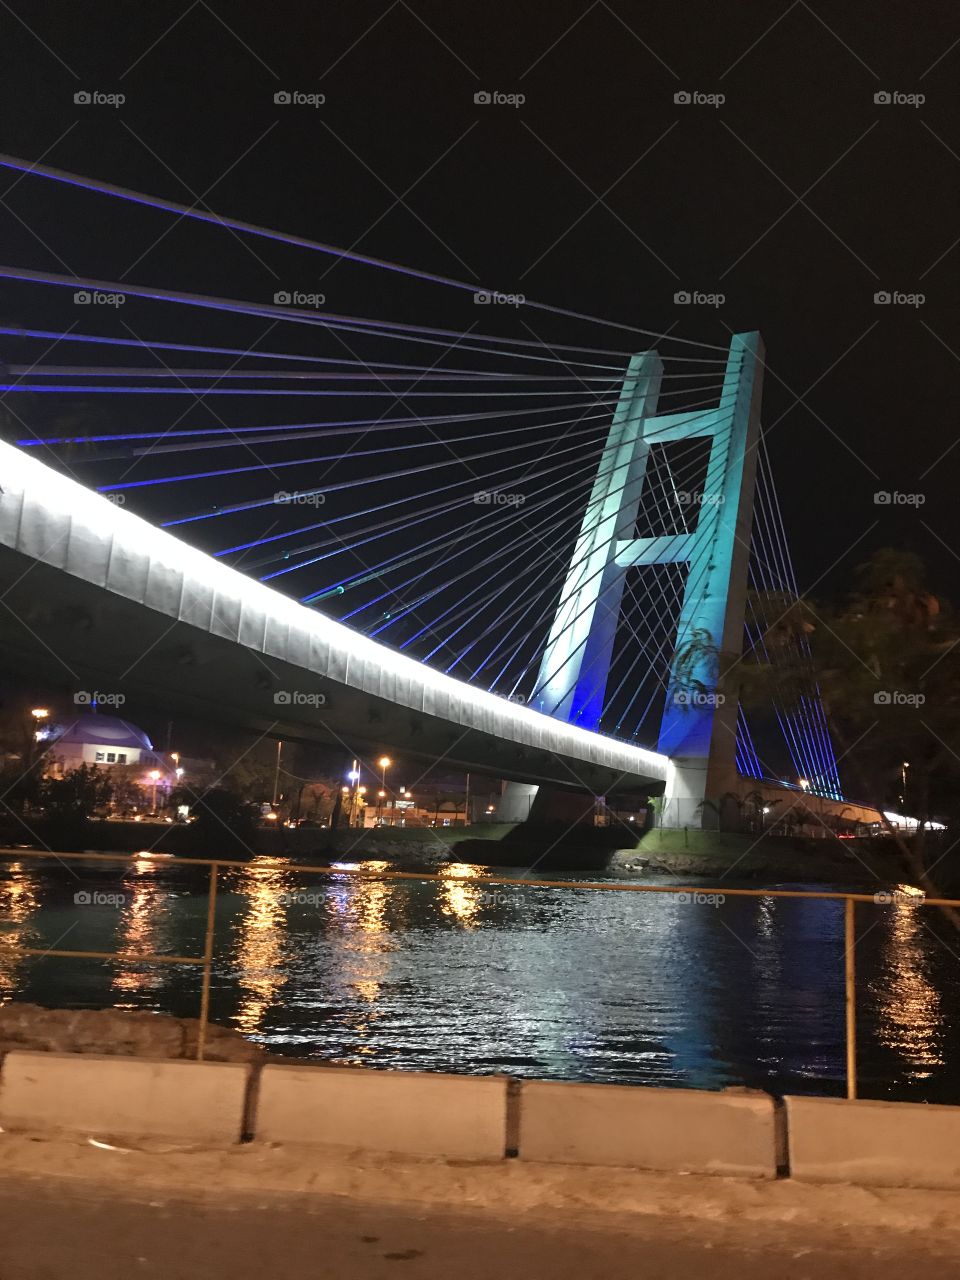 Metro Bridge
Rio - Brazil 